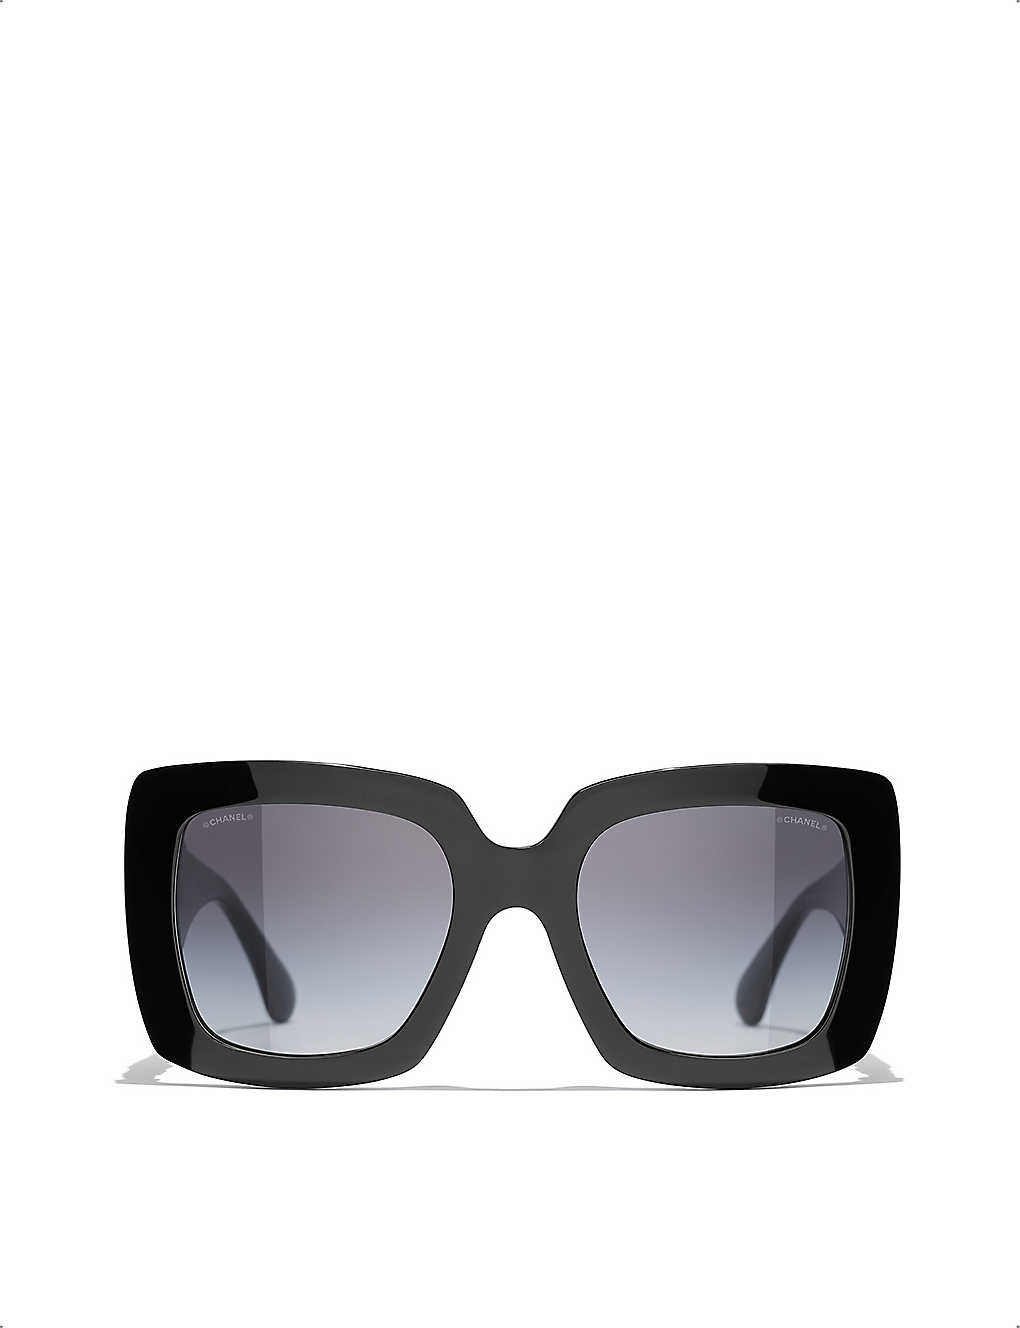 chanel square sunglasses